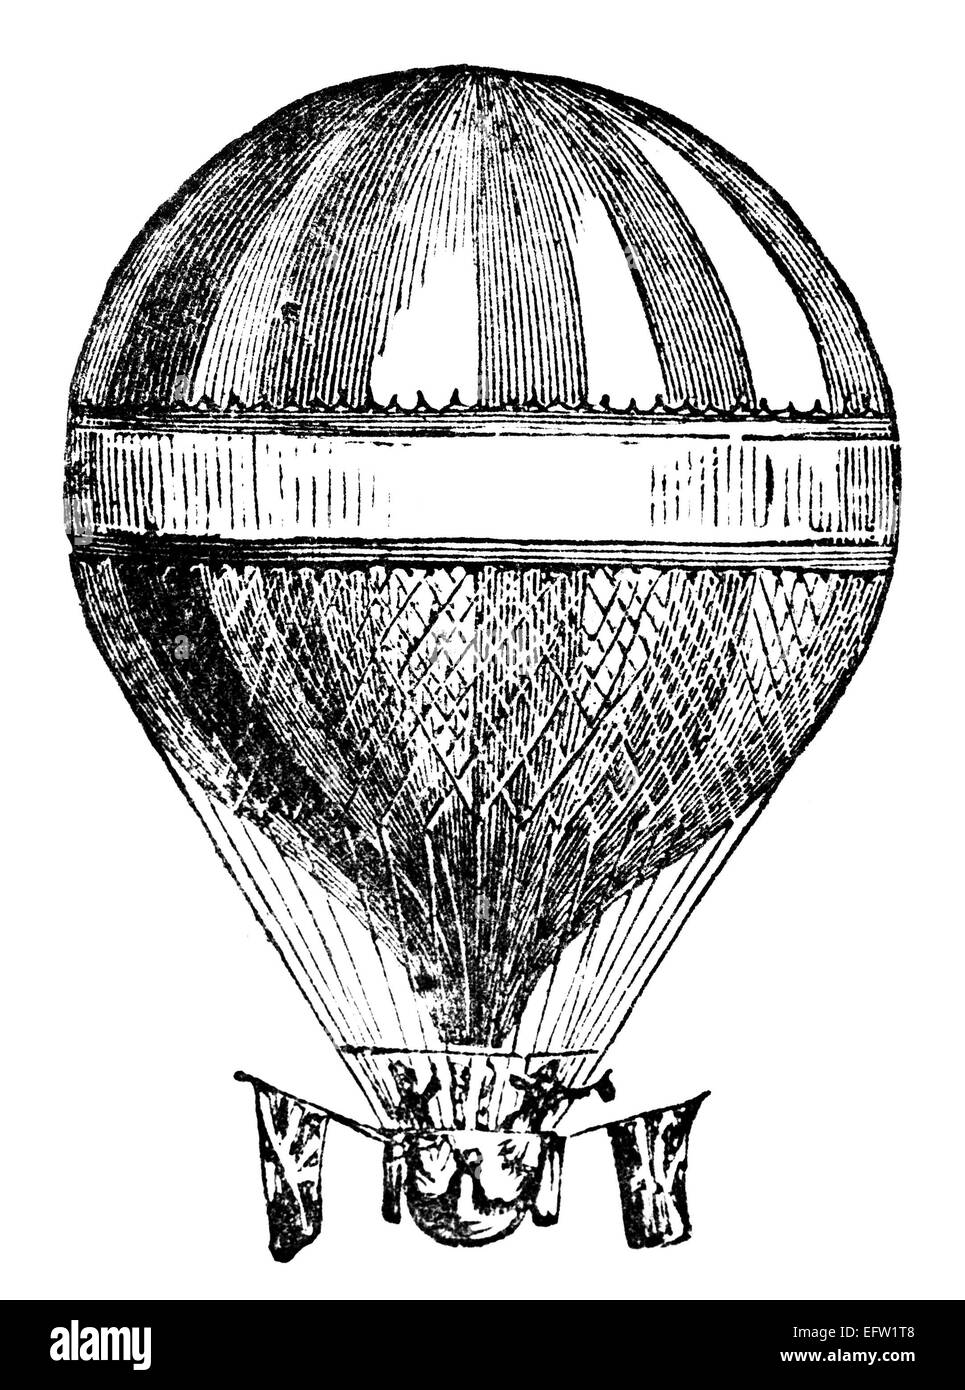 Incisione in stile vittoriano di un palloncino elio. Restaurata digitalmente immagine da una metà del XIX secolo enciclopedia. Foto Stock